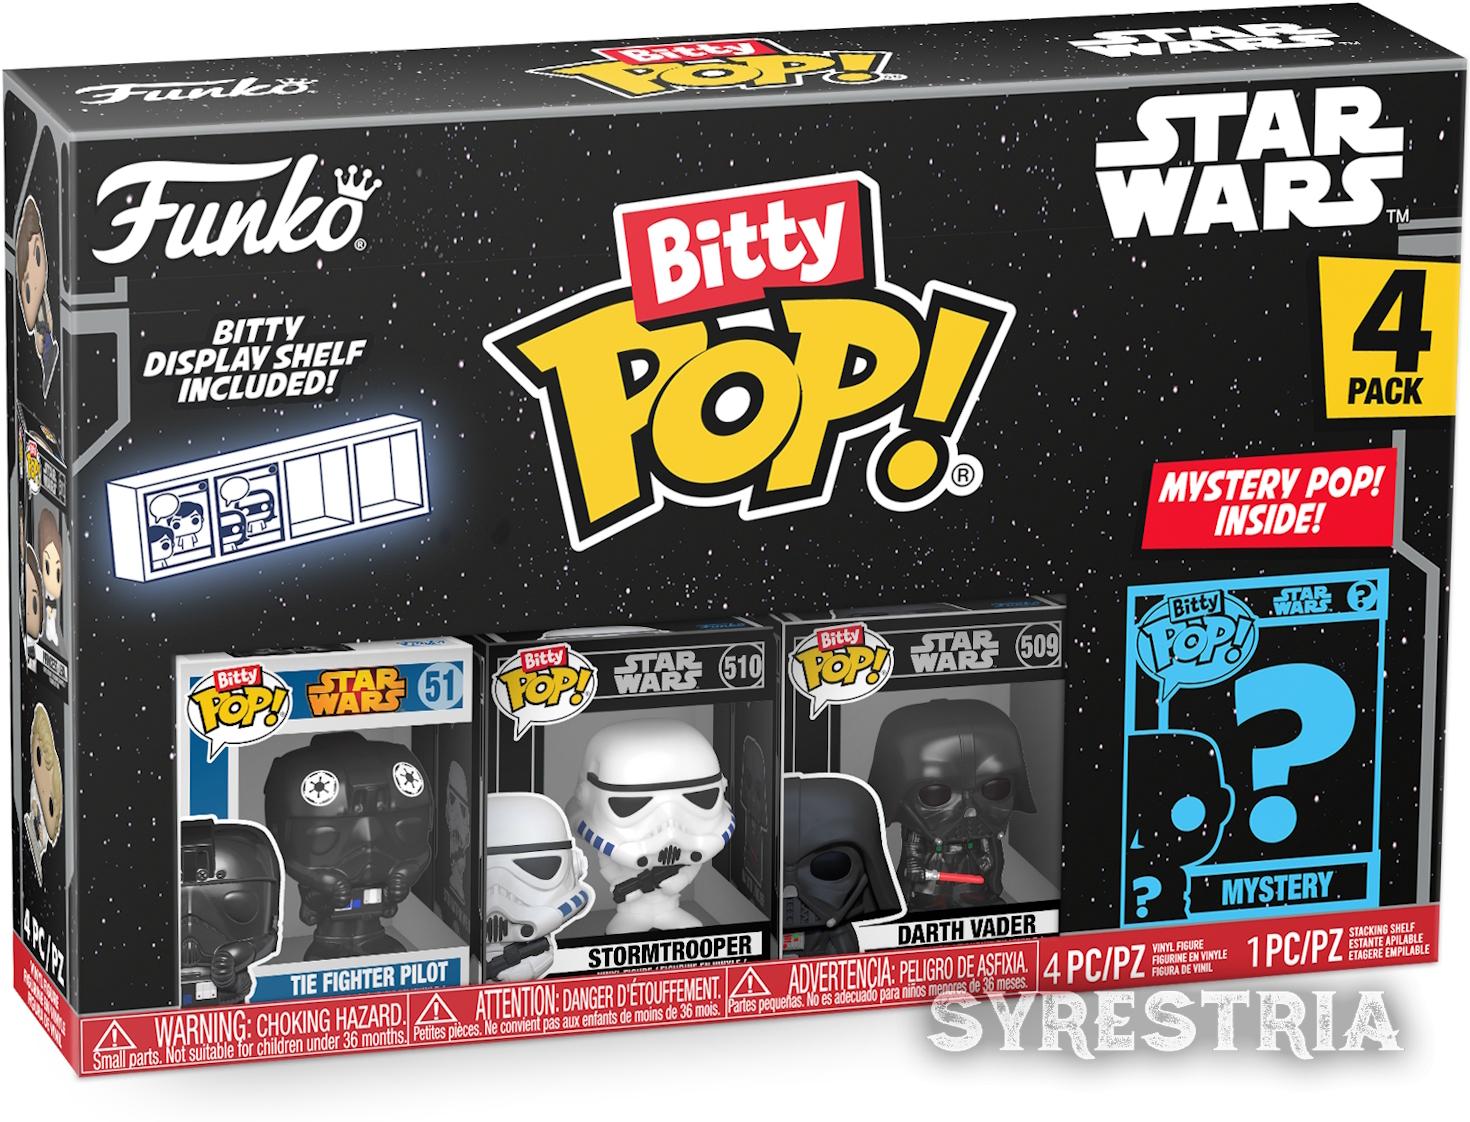 Star Wars - Darth Vader Stormtrooper Tie Fighter Pilot 4er Pack - Bitty Pop! Funko